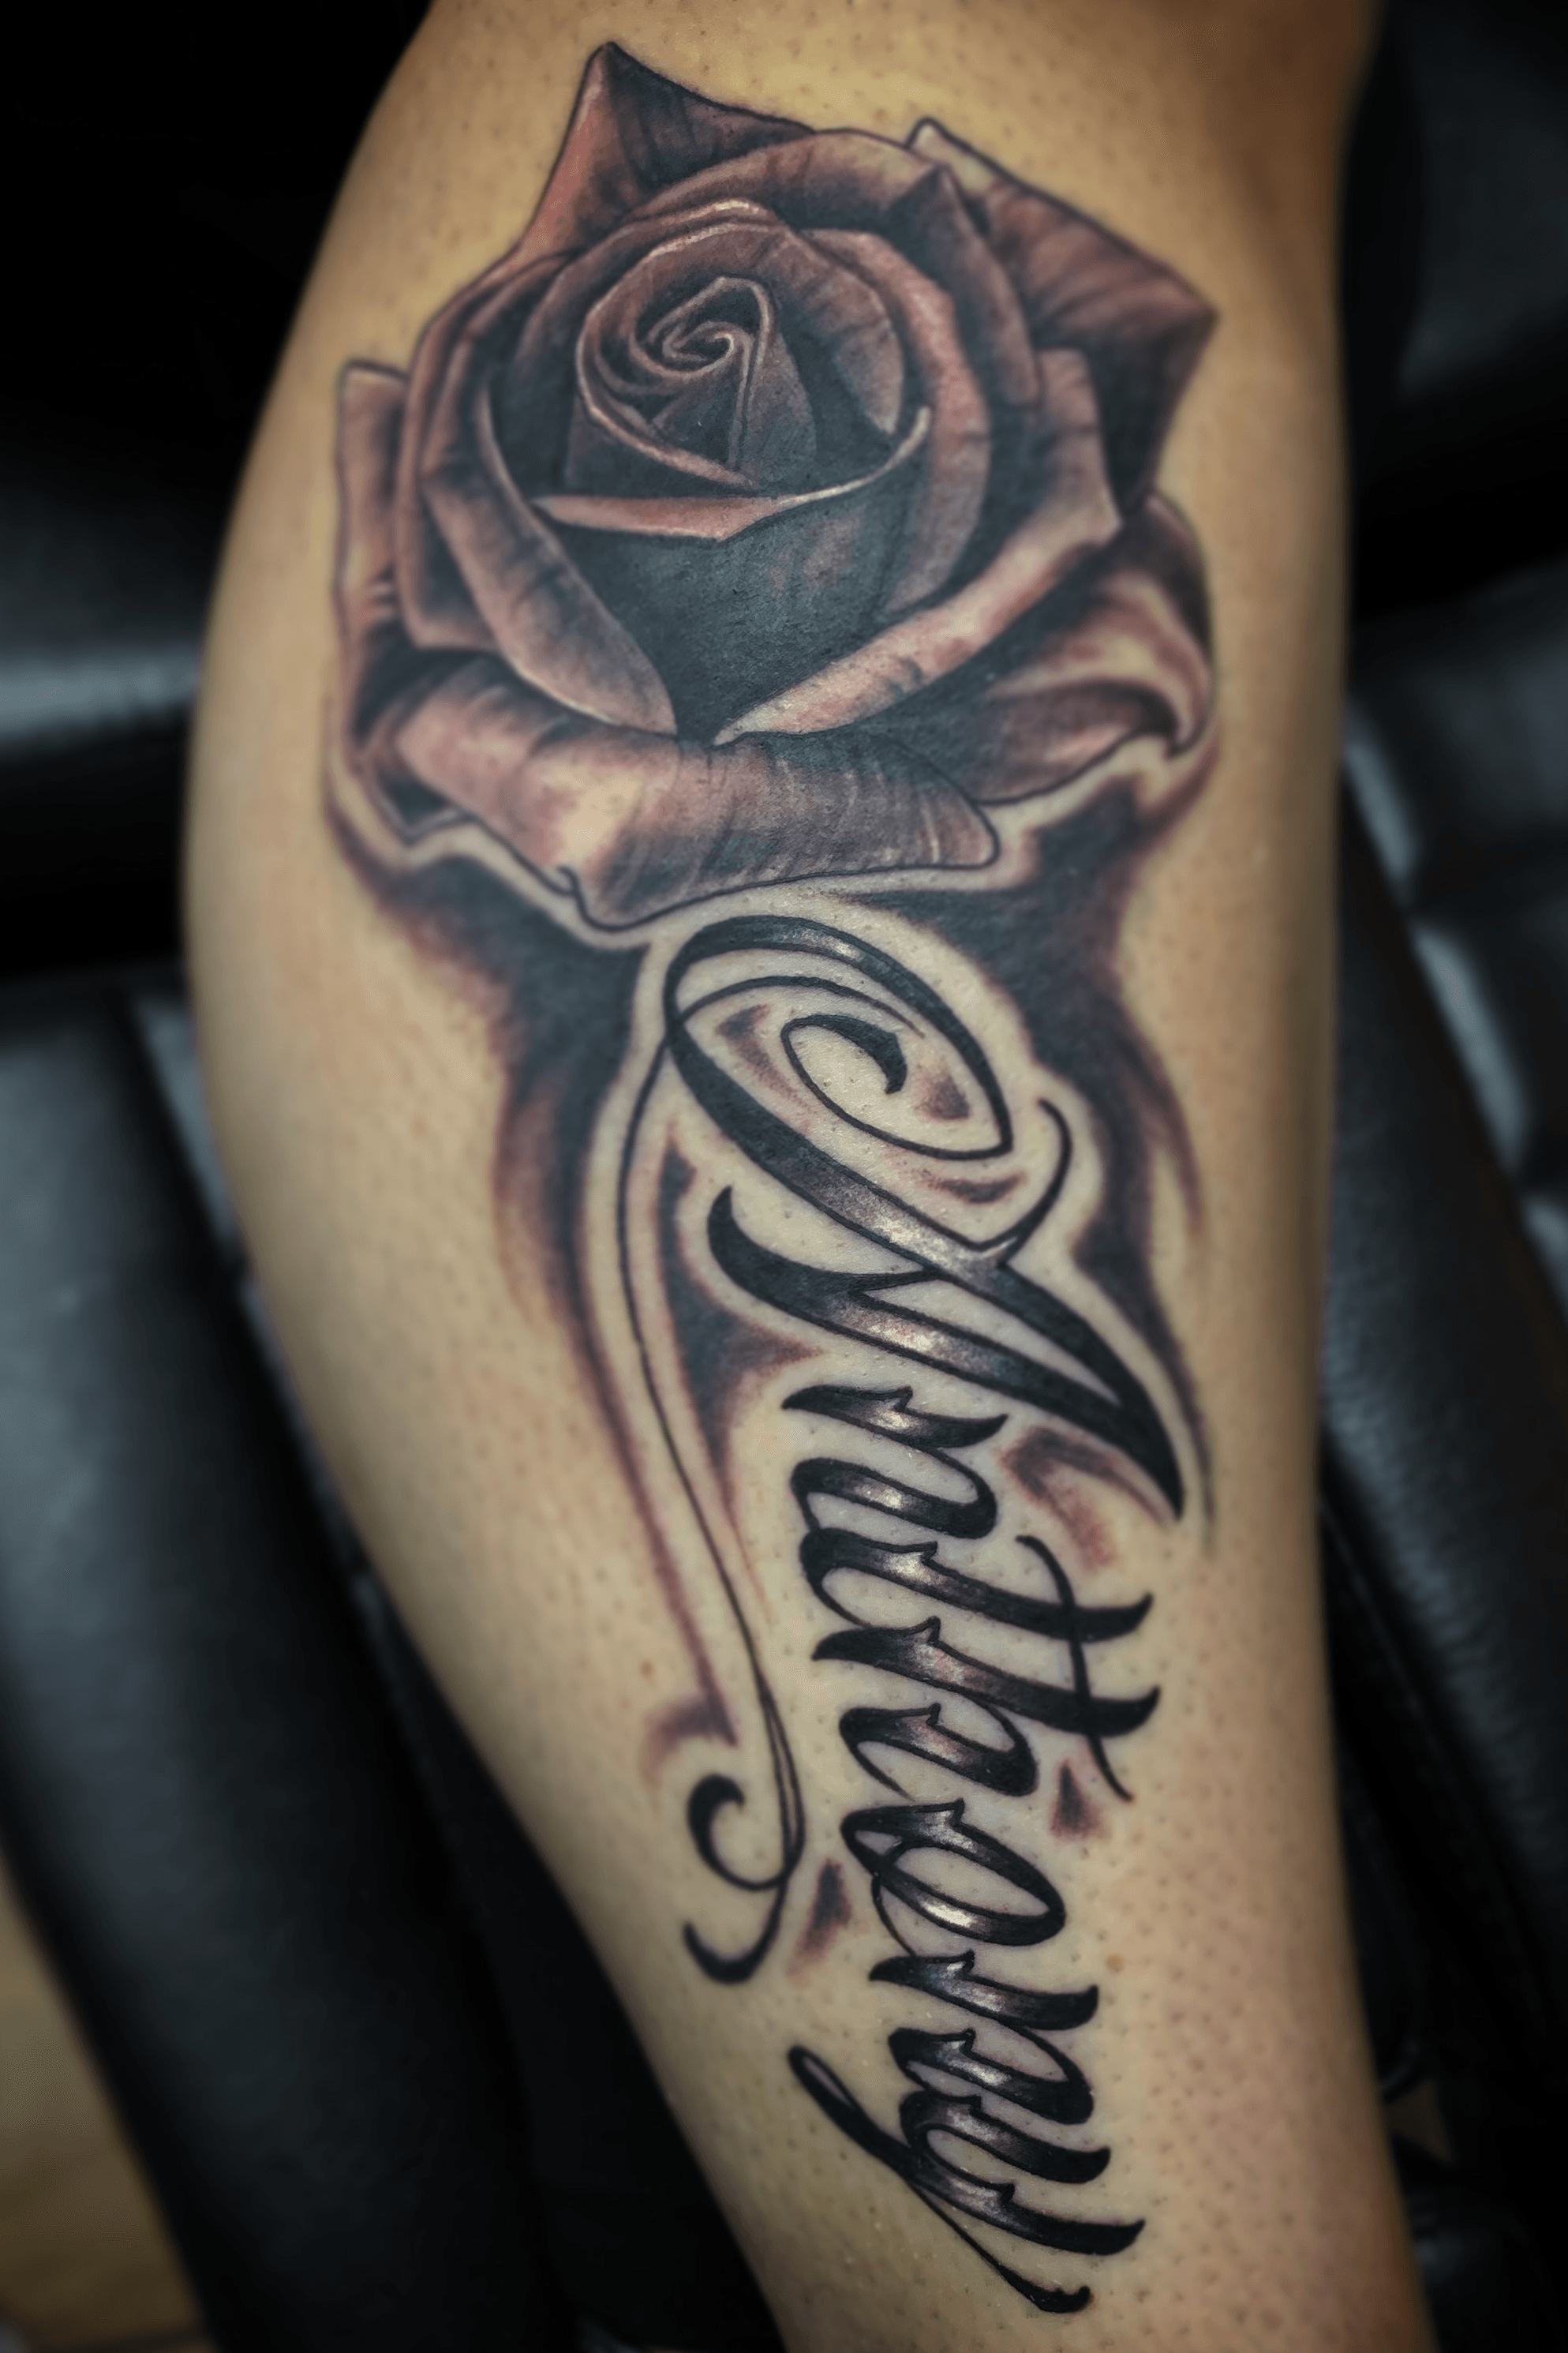 Anthony Name Tattoo Designs  Name tattoo designs Name tattoos Name tattoo